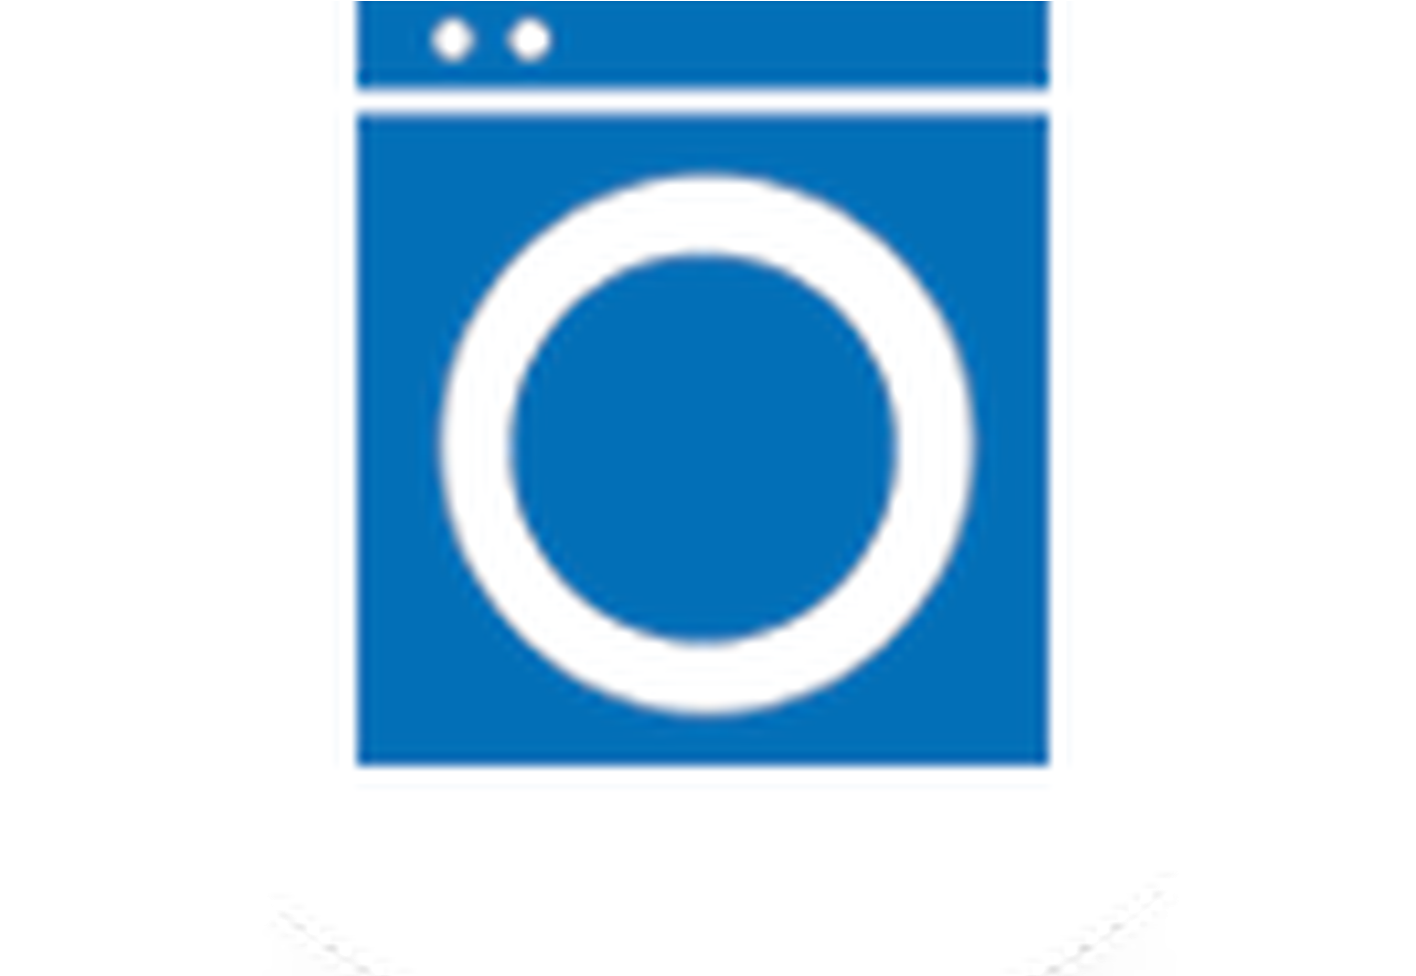 Laundry Service - Laundry (1600x975)